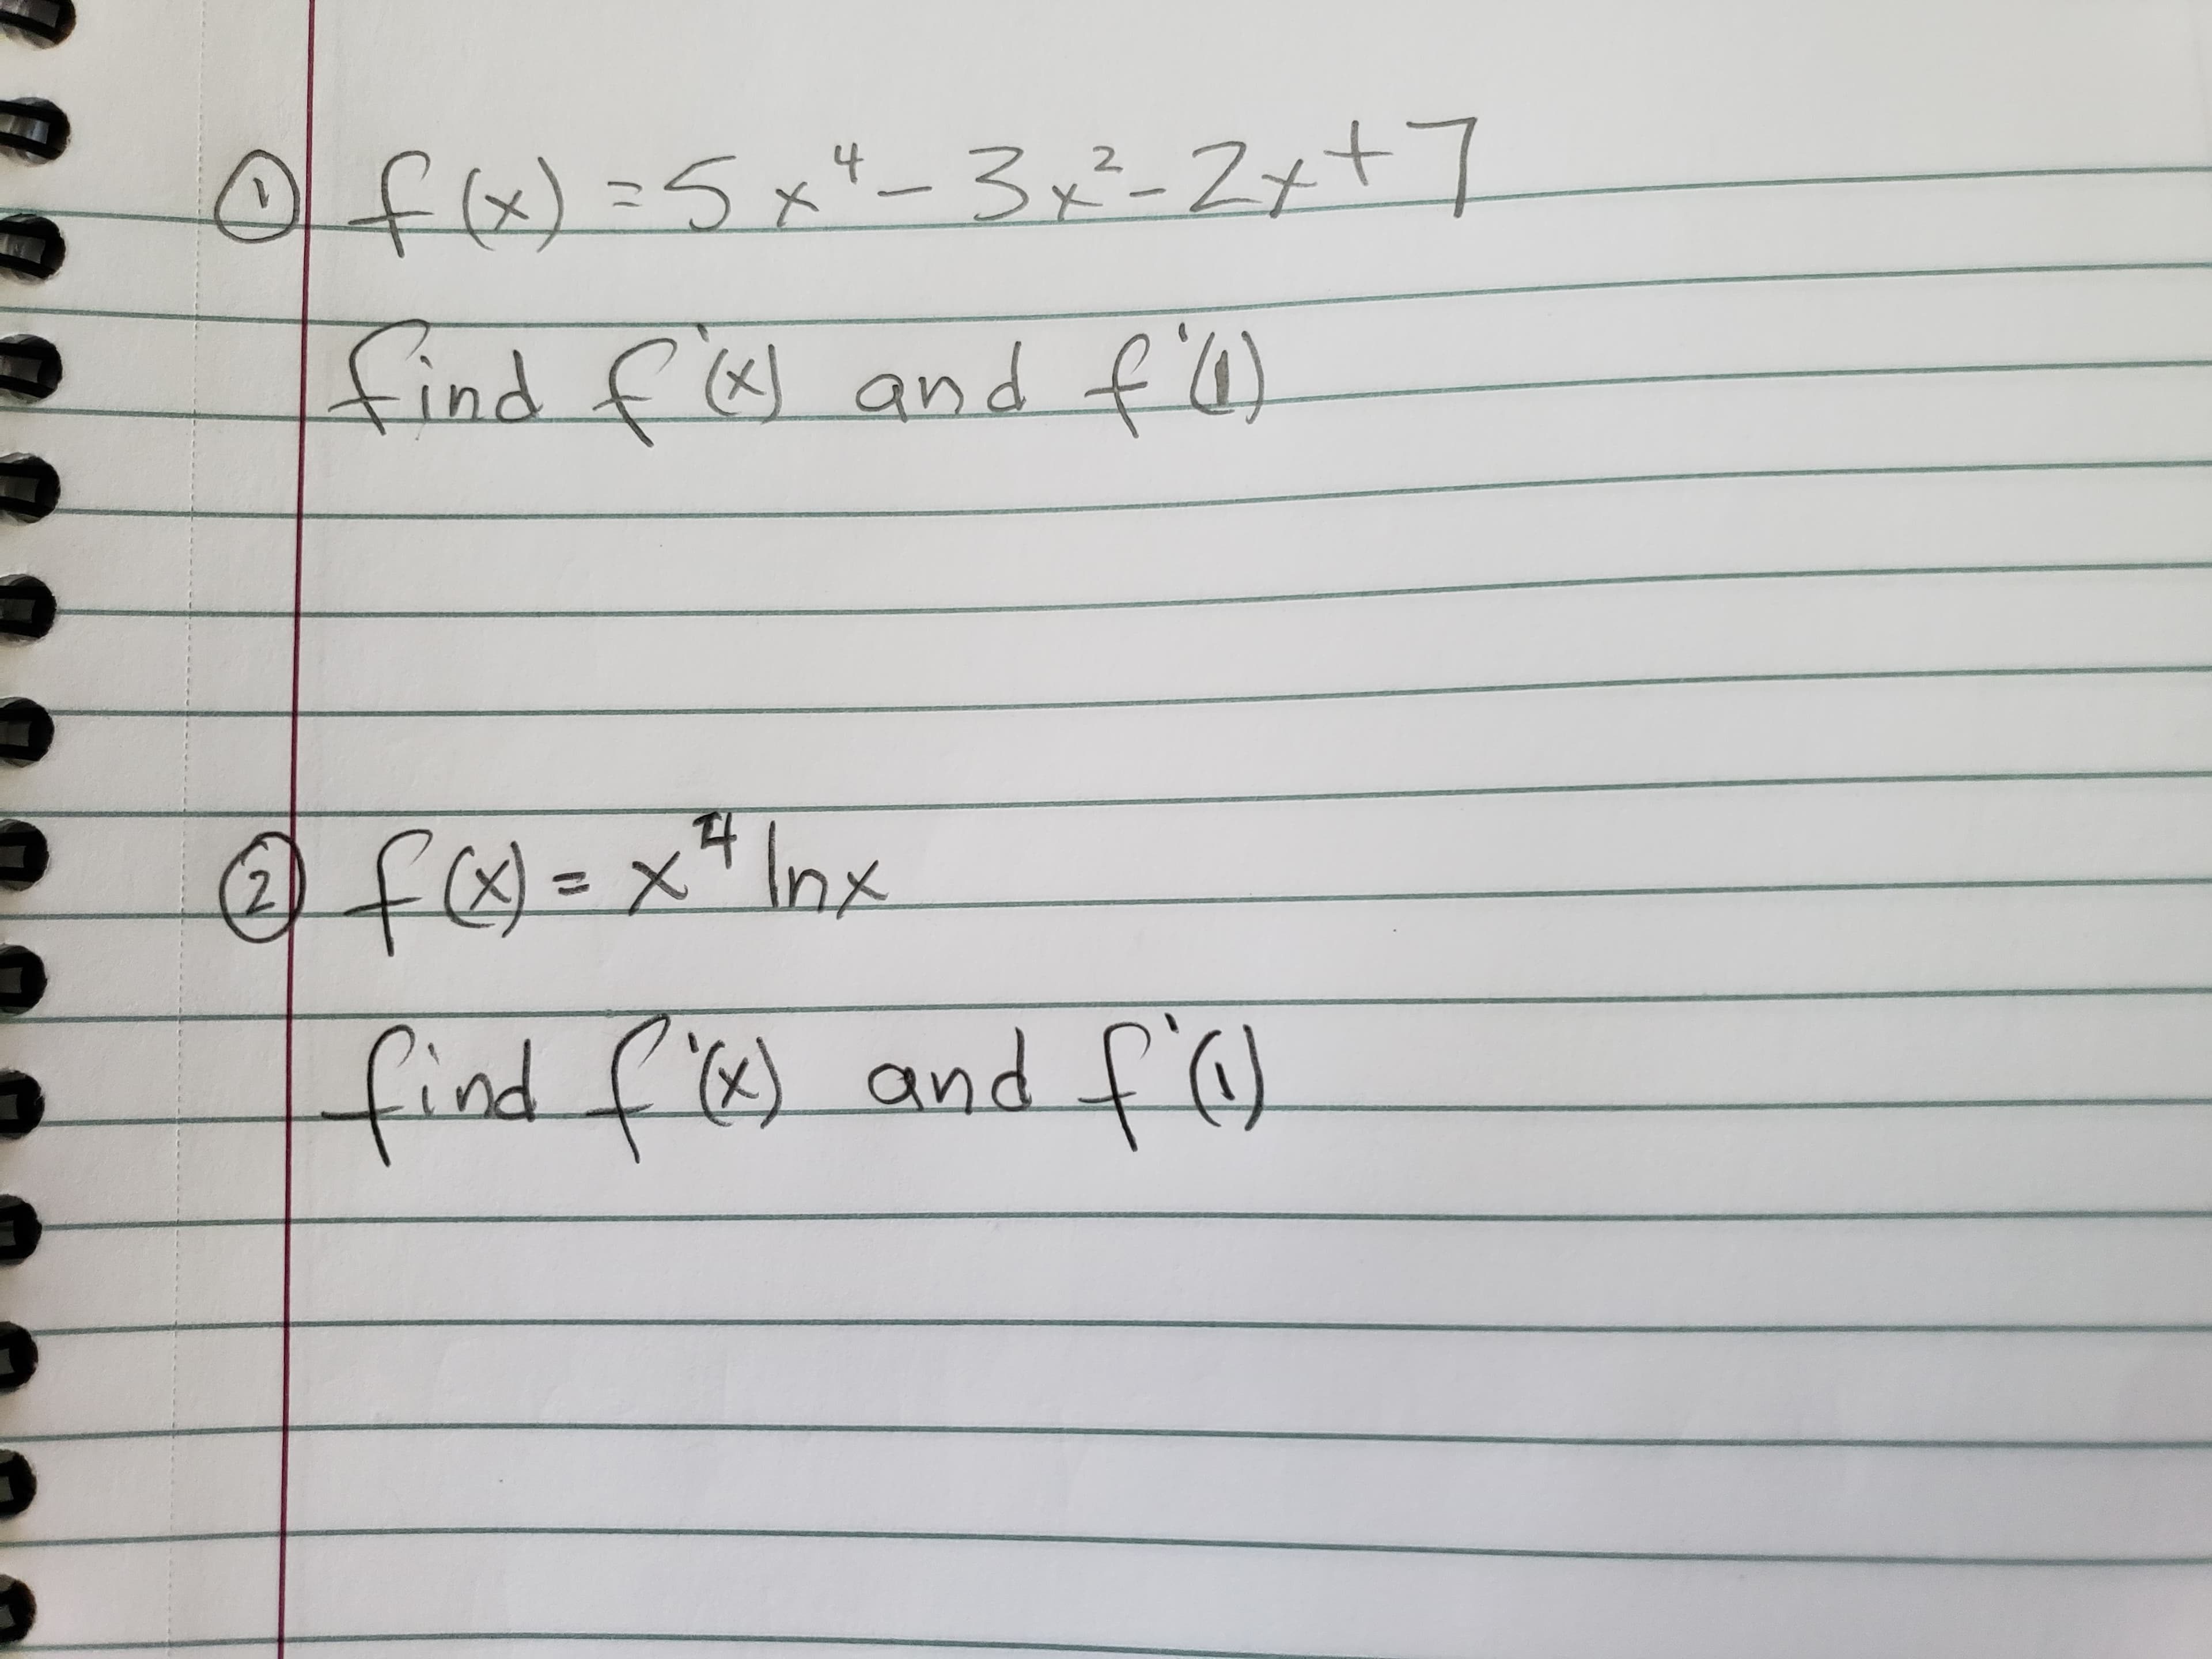 Ofx)=5x"_3x²-Z+t]
4
2
find f6 and fW)
(x)
f =x* Inx
find f') and fe
